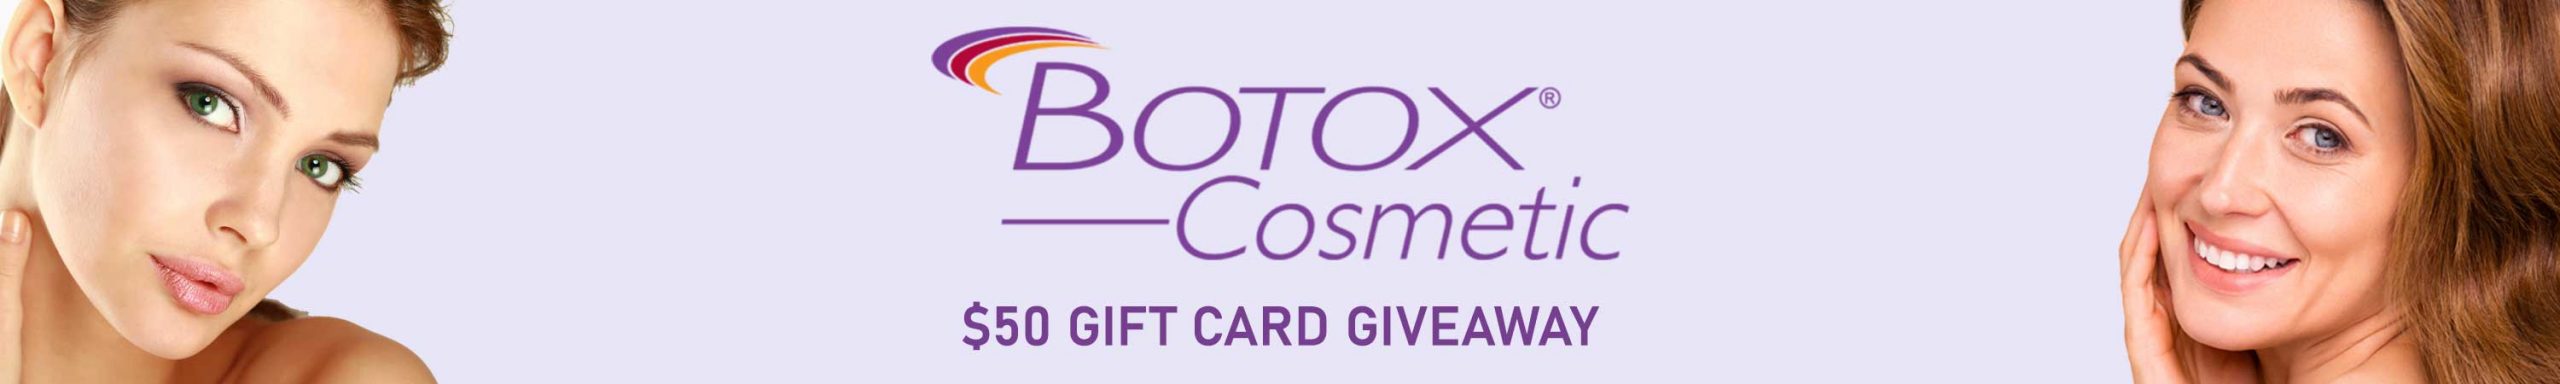 botox-50-banner